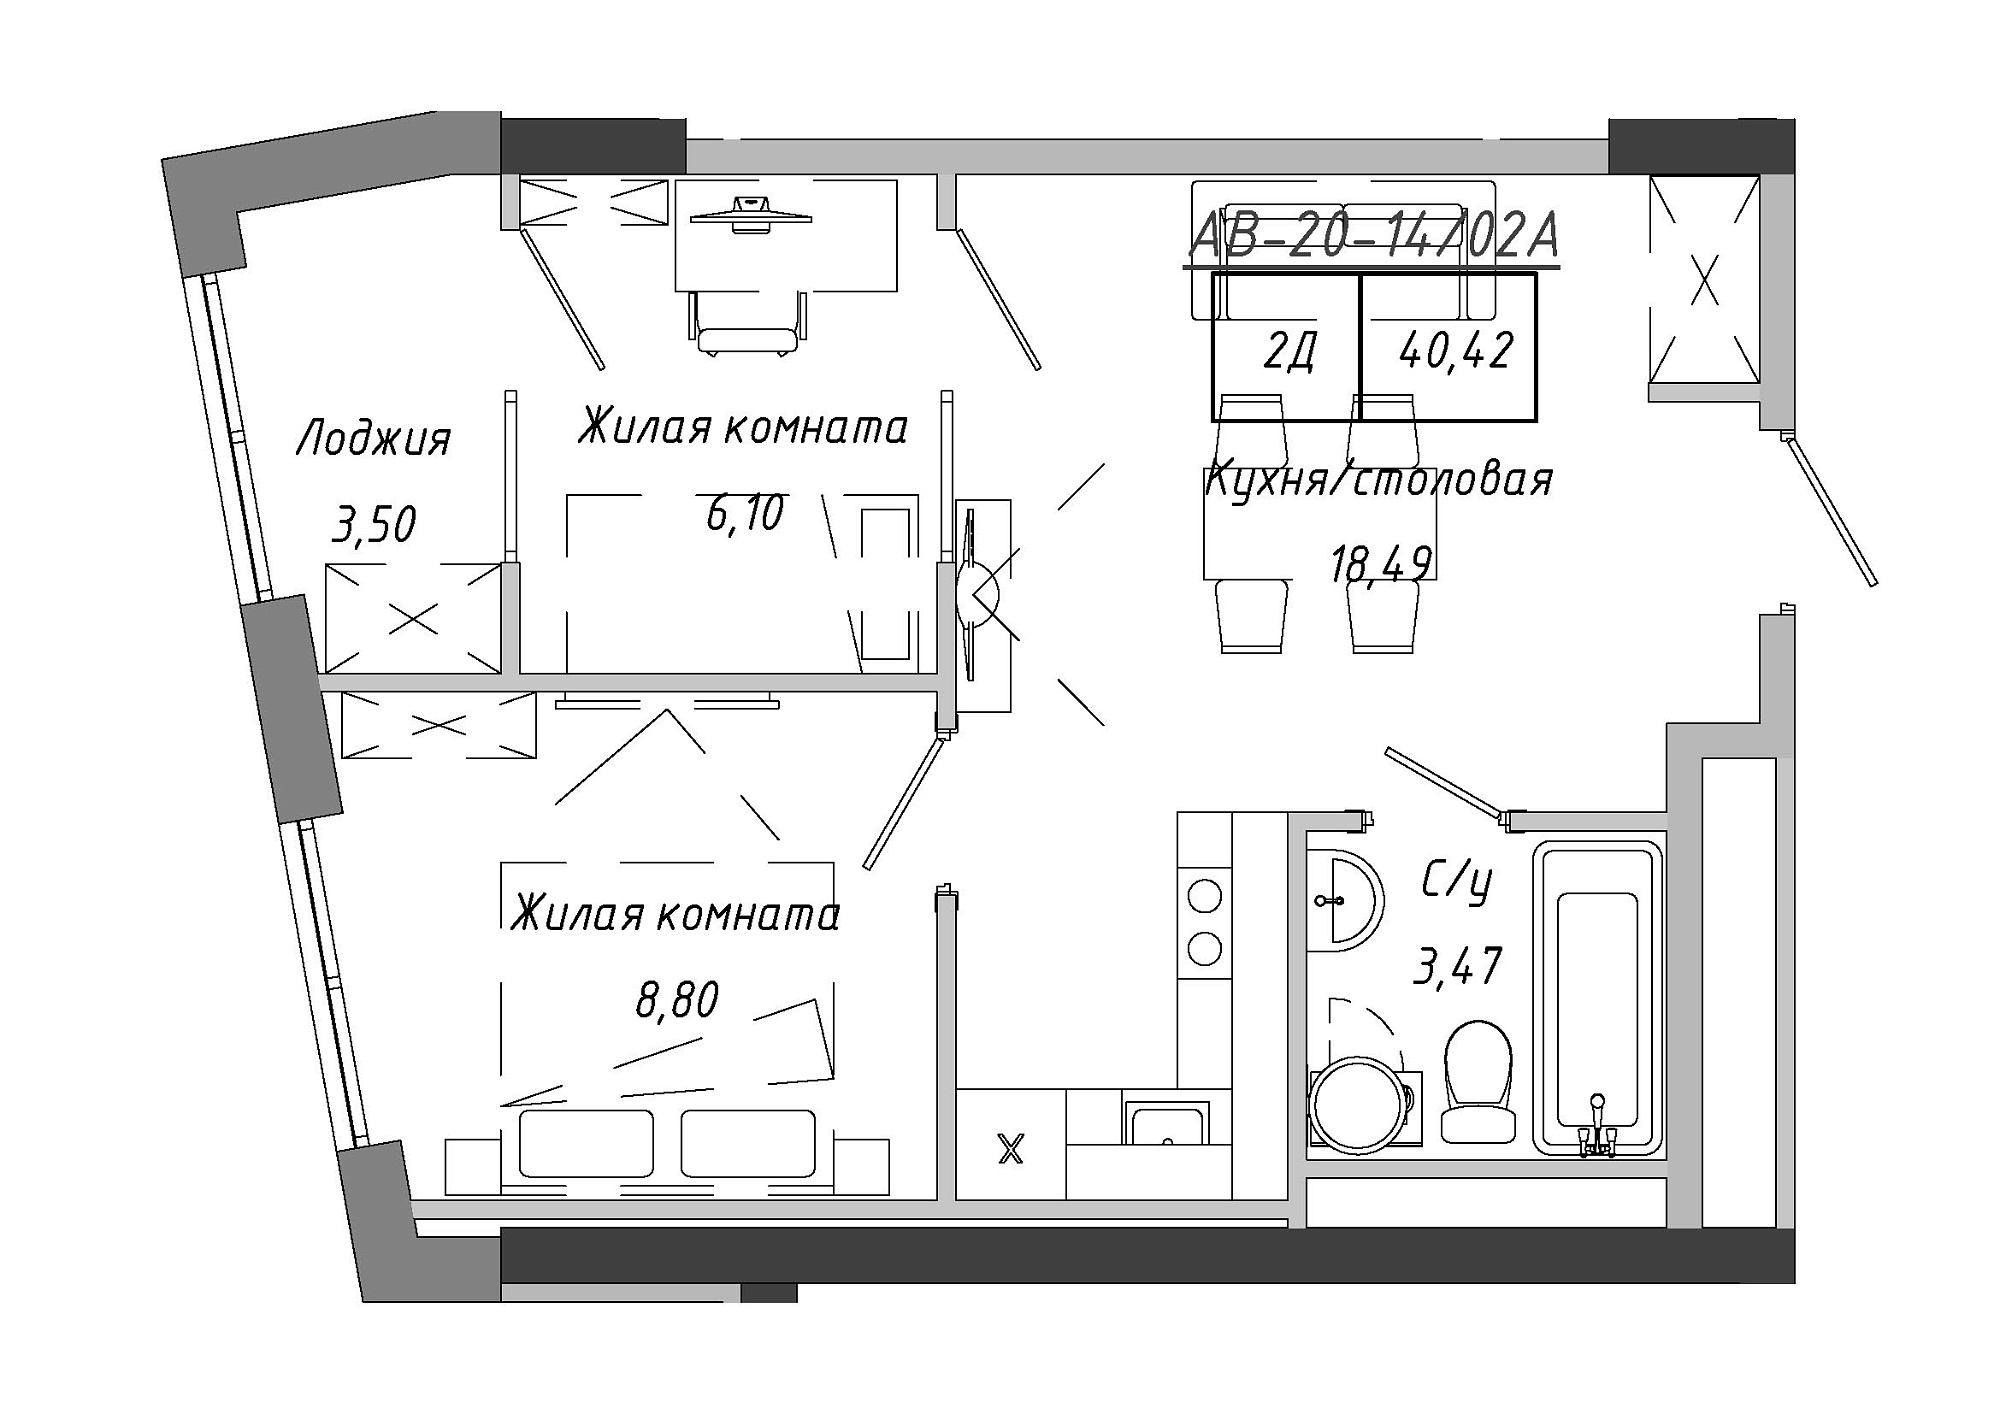 Планування 2-к квартира площею 40.42м2, AB-20-14/0102a.